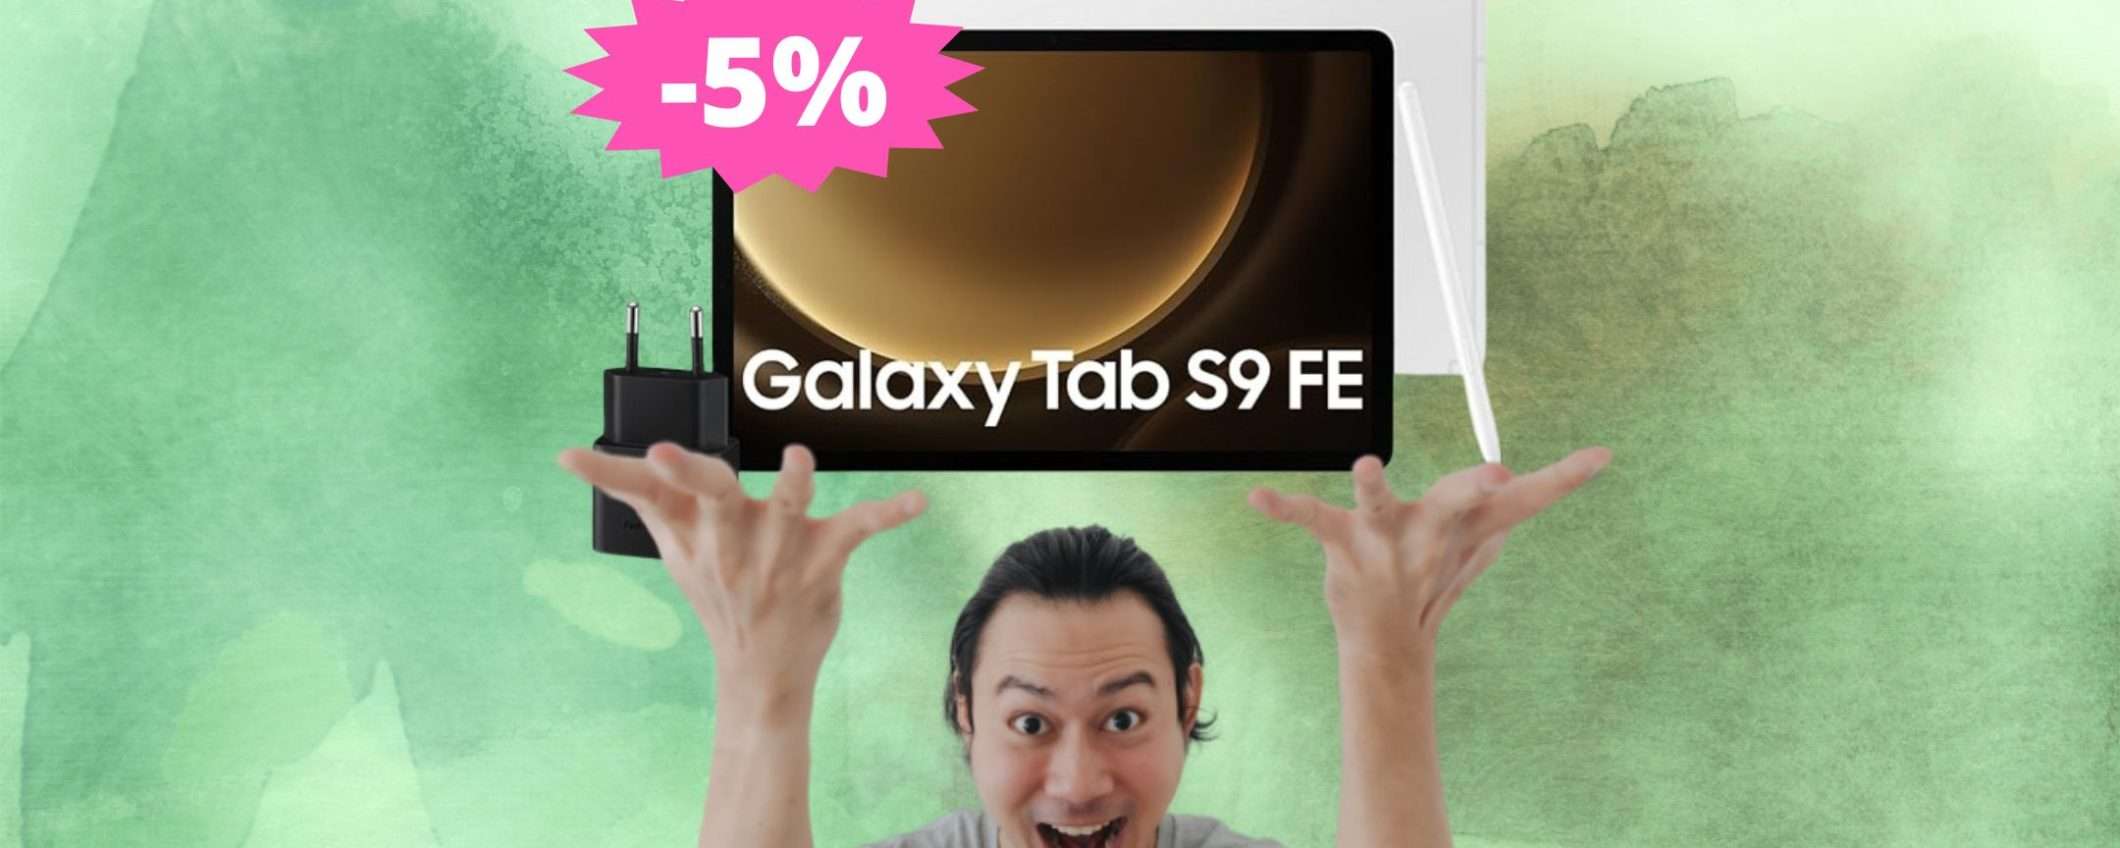 Samsung Galaxy Tab S9 FE: OFFERTA a tempo limitato su Amazon